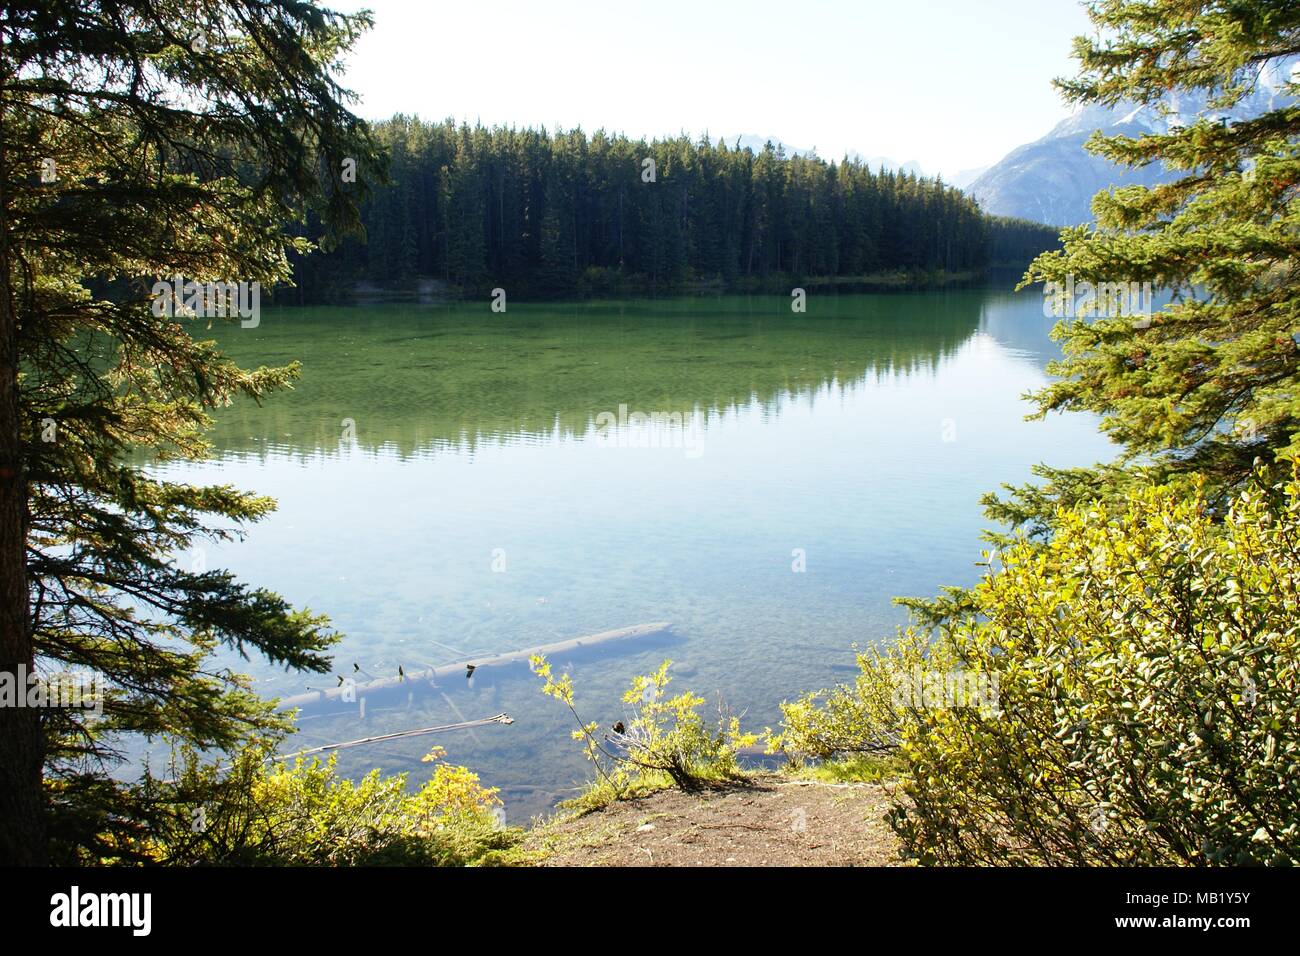 Prise pendant les vacances dans les paysages des parcs nationaux du Canada Banque D'Images